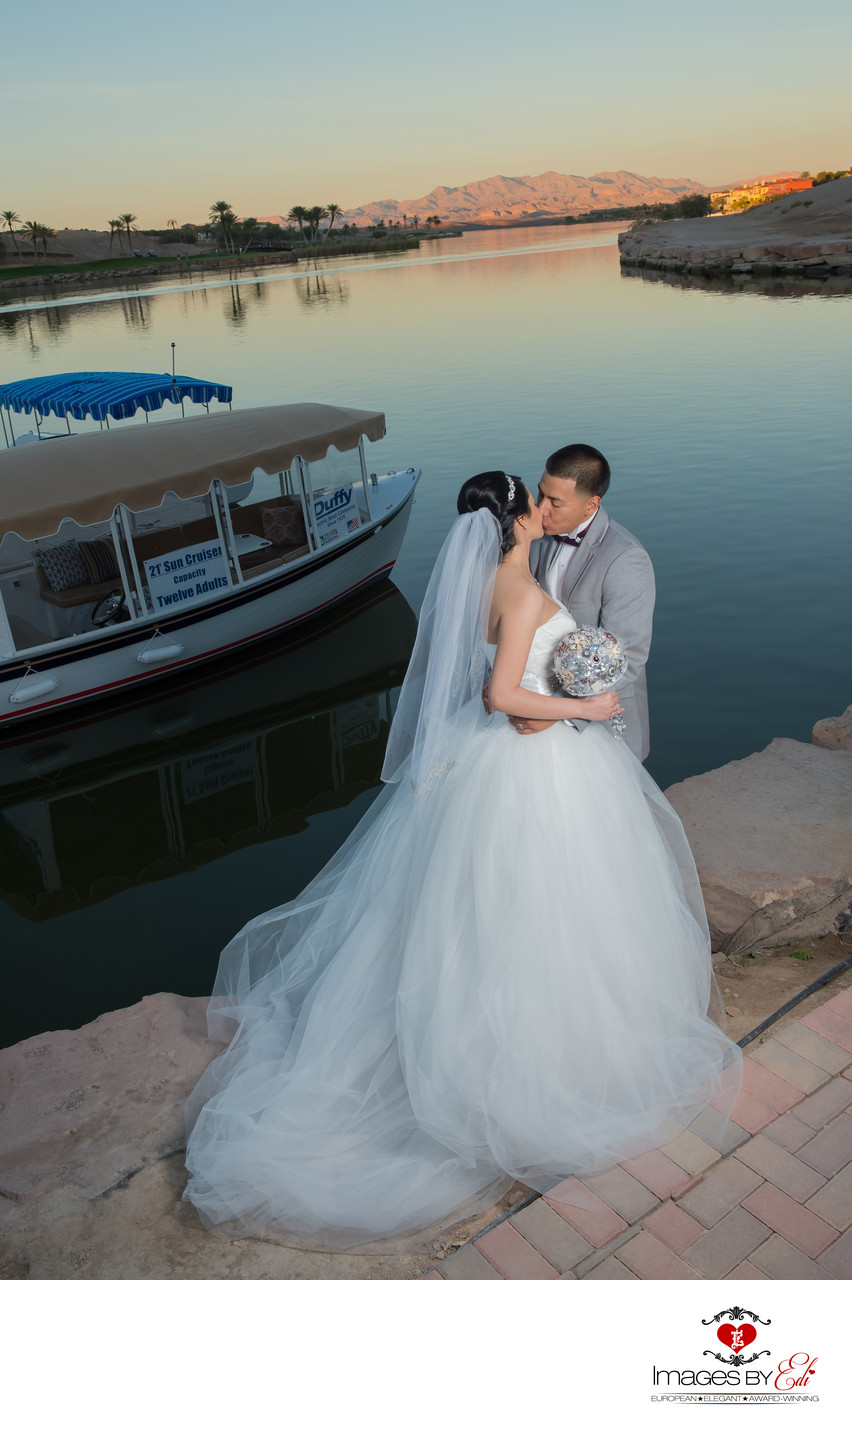 Lake Las Vegas Wedding Photography at sunset